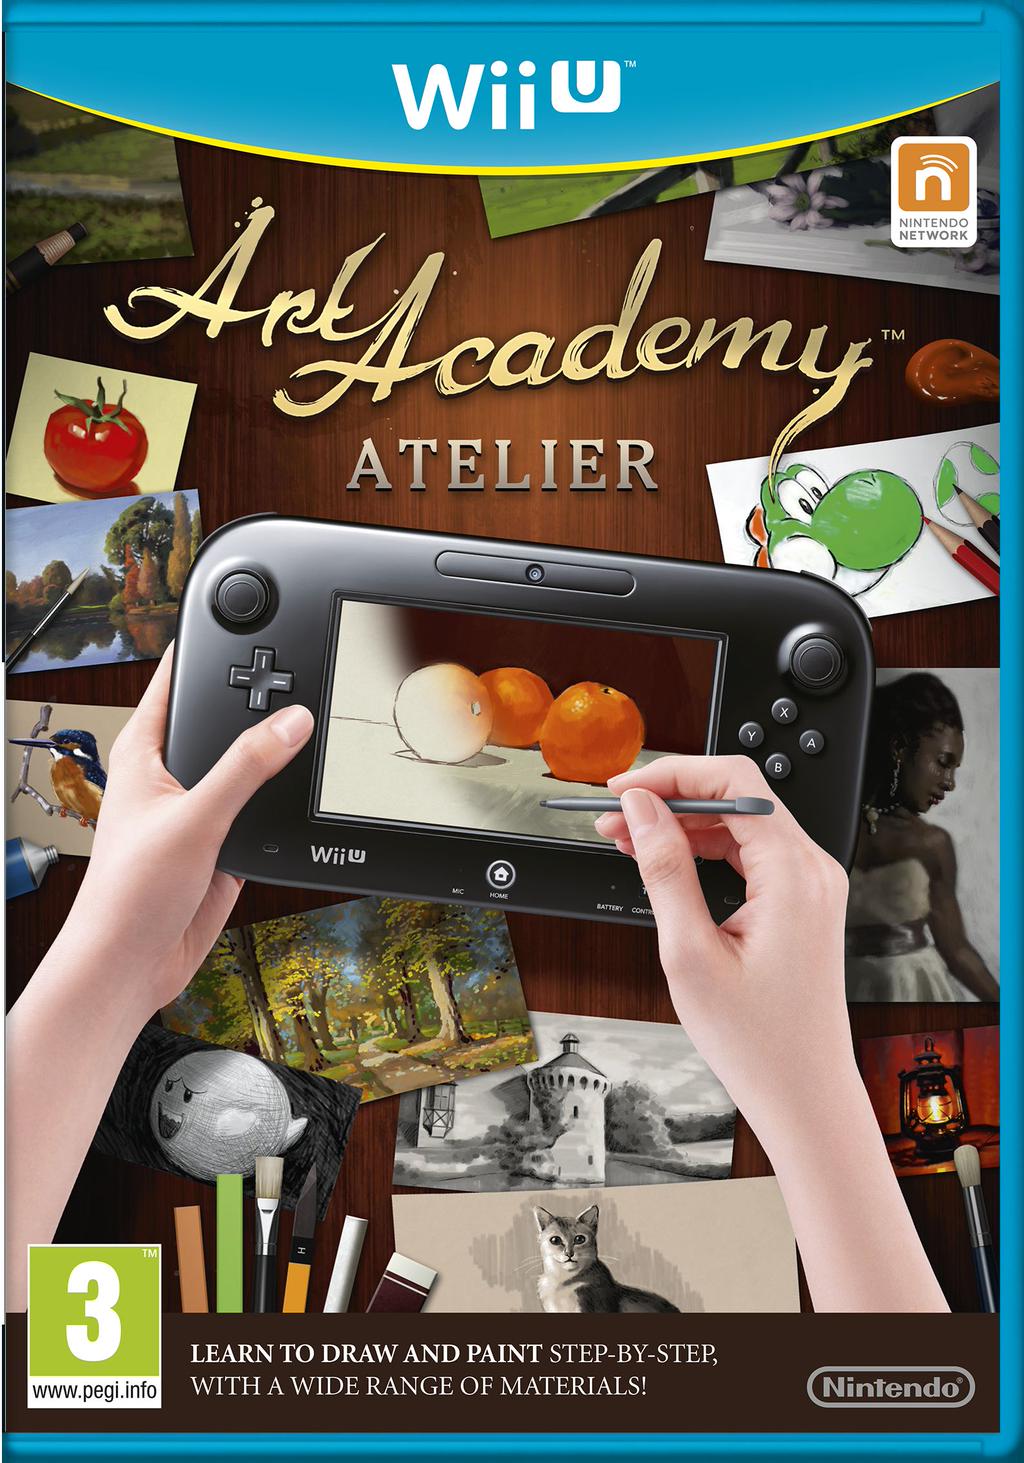 Cover vom Spiel mit einem Wii U-Tablet, auf dem gerade Äpfel gezeichnet werden.